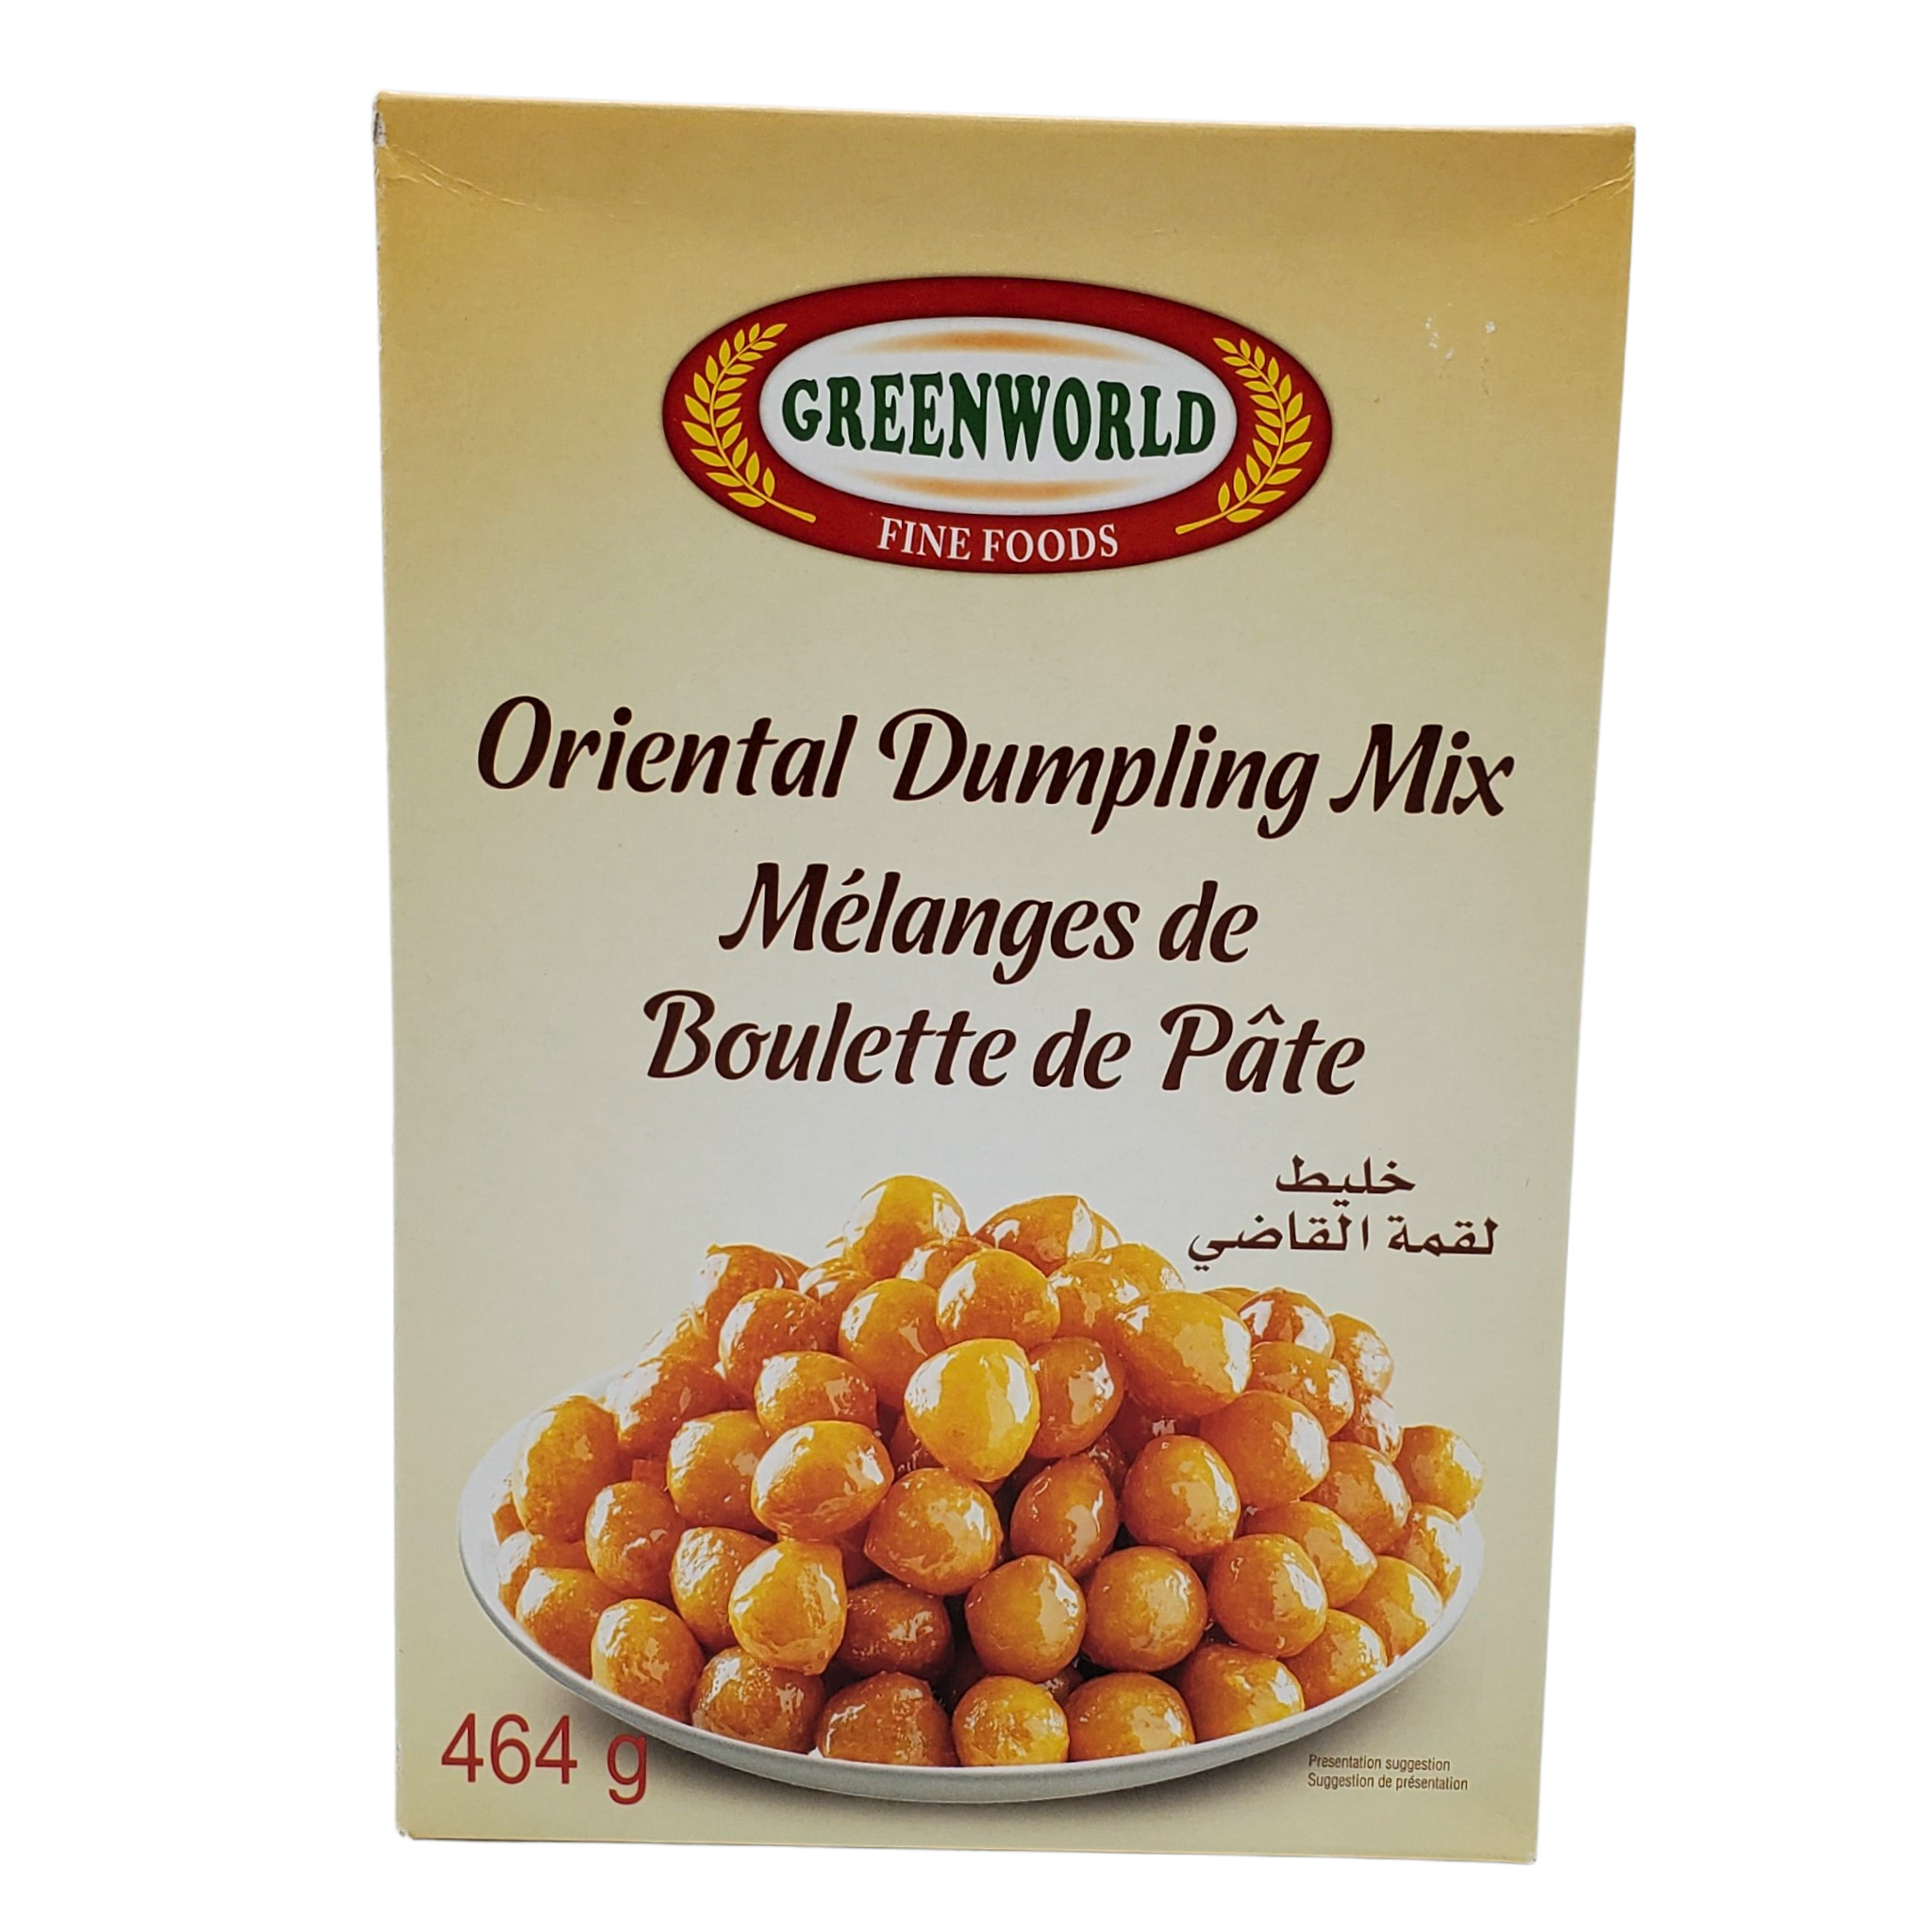 Greenworld Oriental Dumpling Mix 464g - Melanges de Boulette de Pate